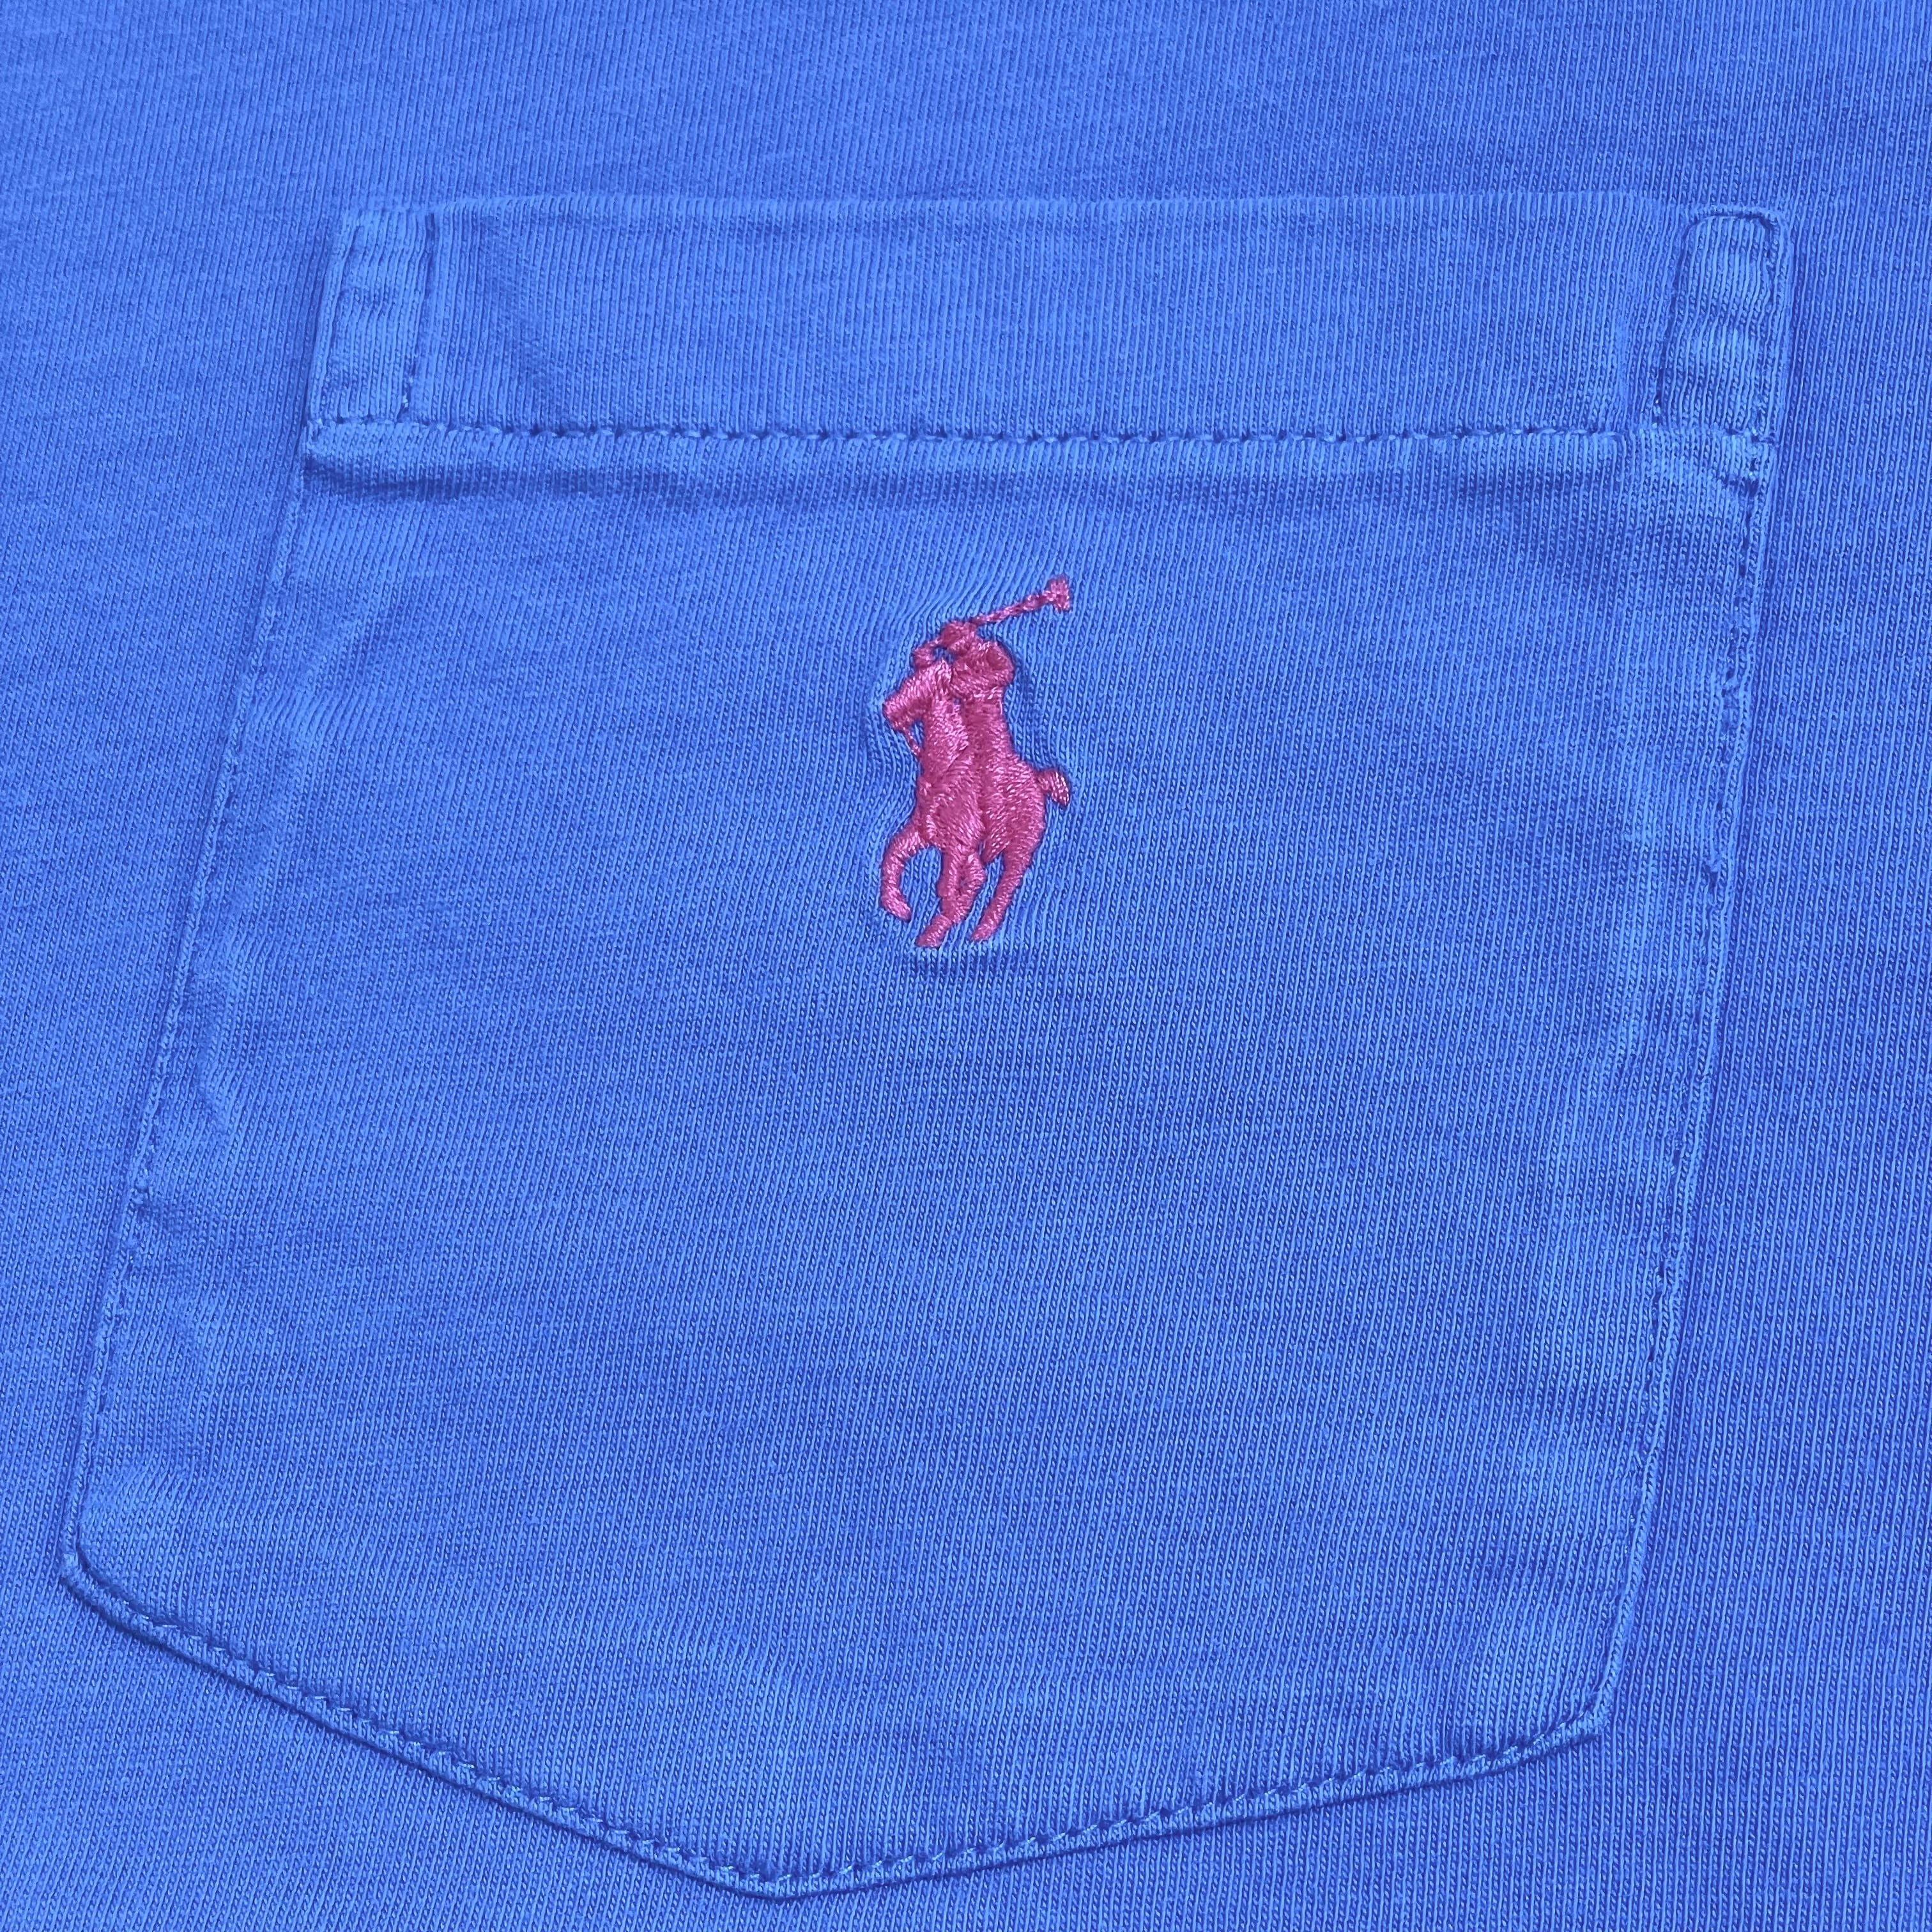 POLO RALPH LAUREN】XL ビッグシルエット ポケットTシャツ 刺繍ロゴ ...